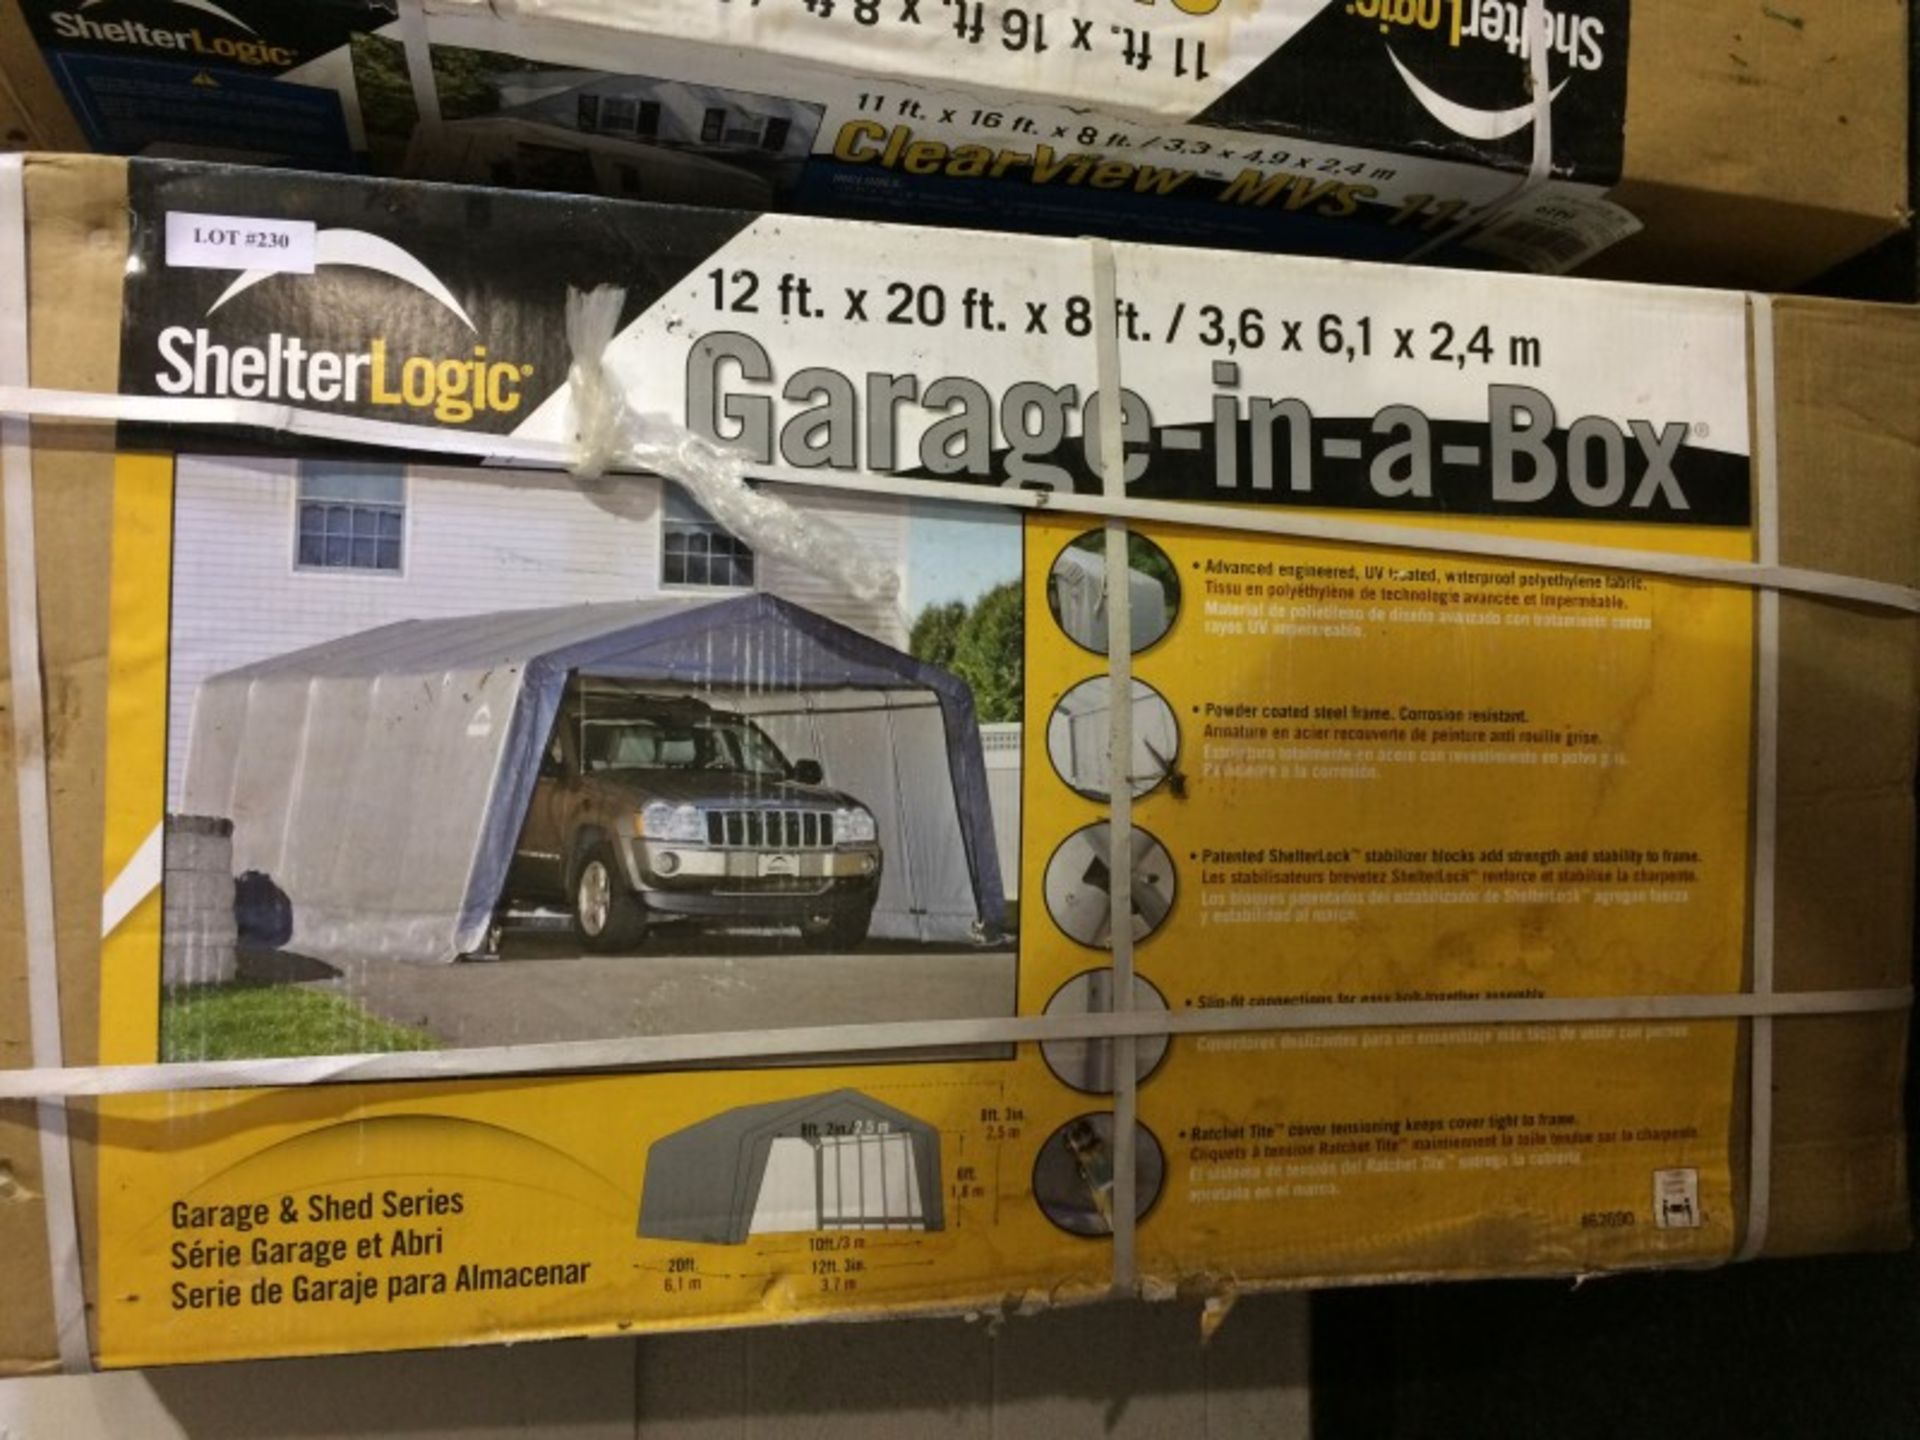 Shelter Logic Garage-in-a-box 12'x20'